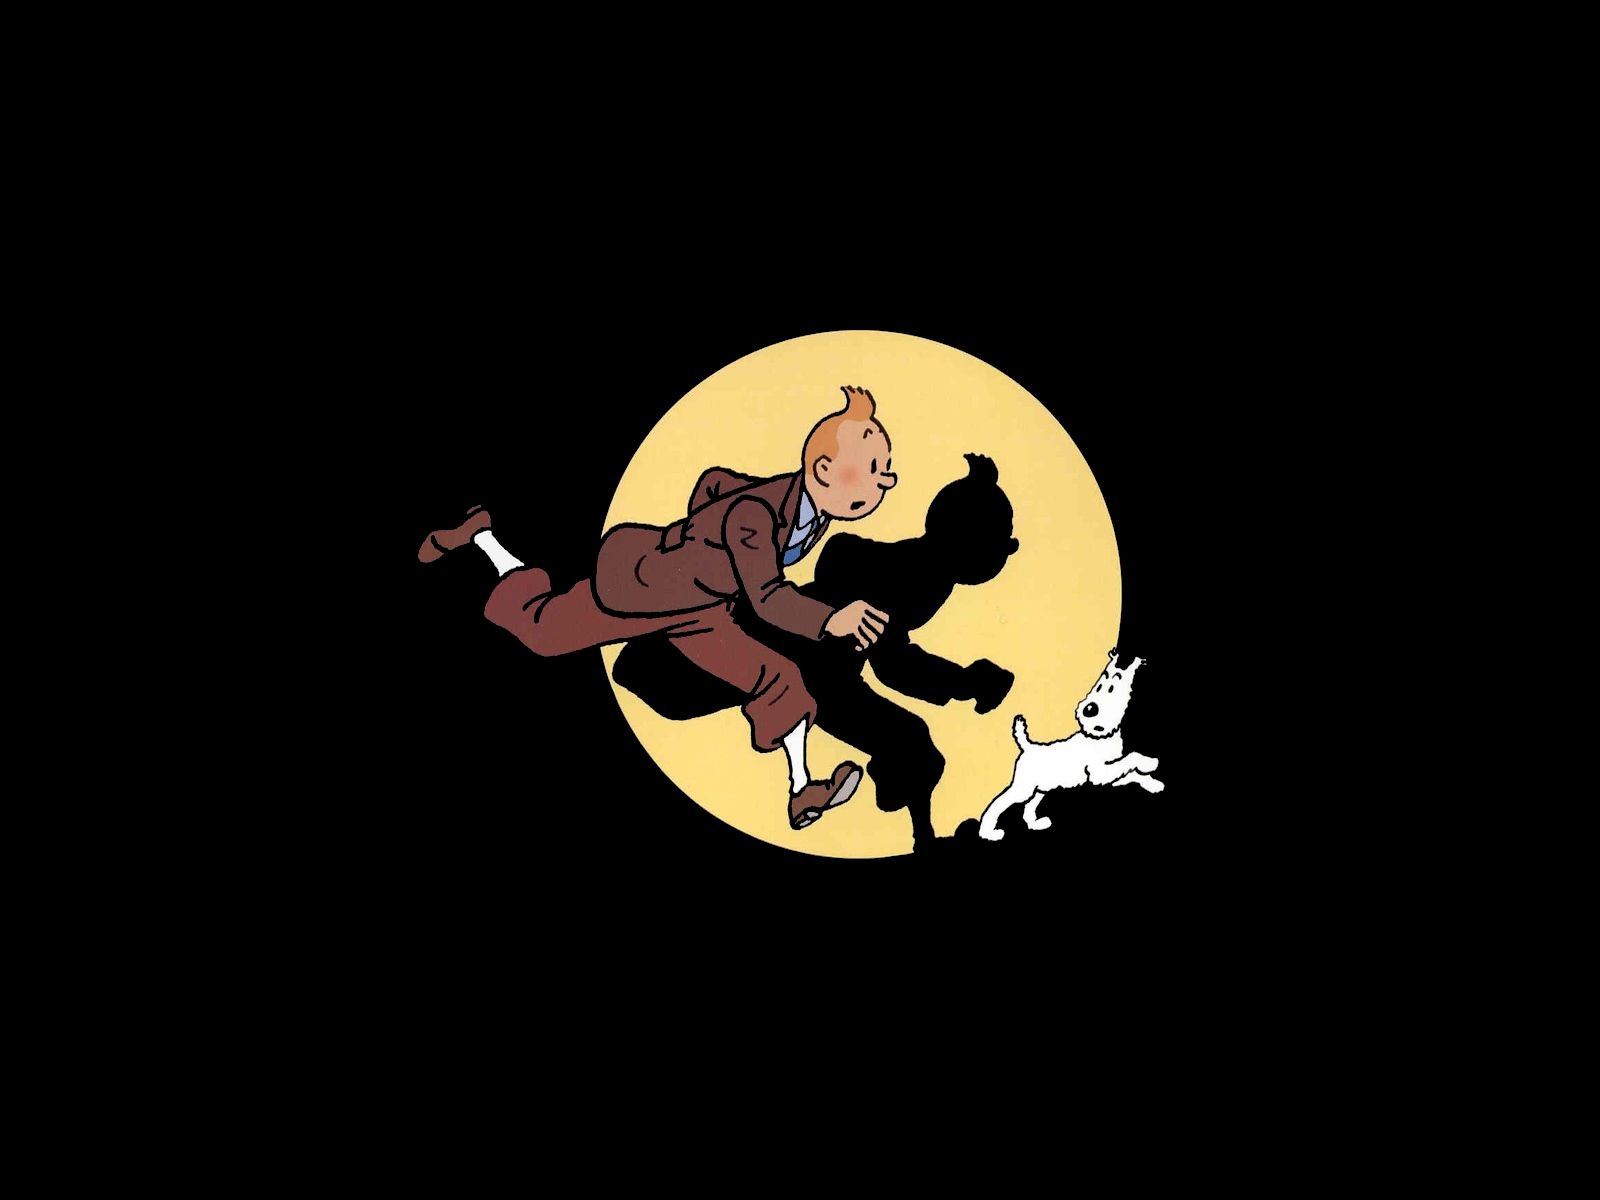 Tintin - Tintin Wallpaper 32261125 - Fanpop